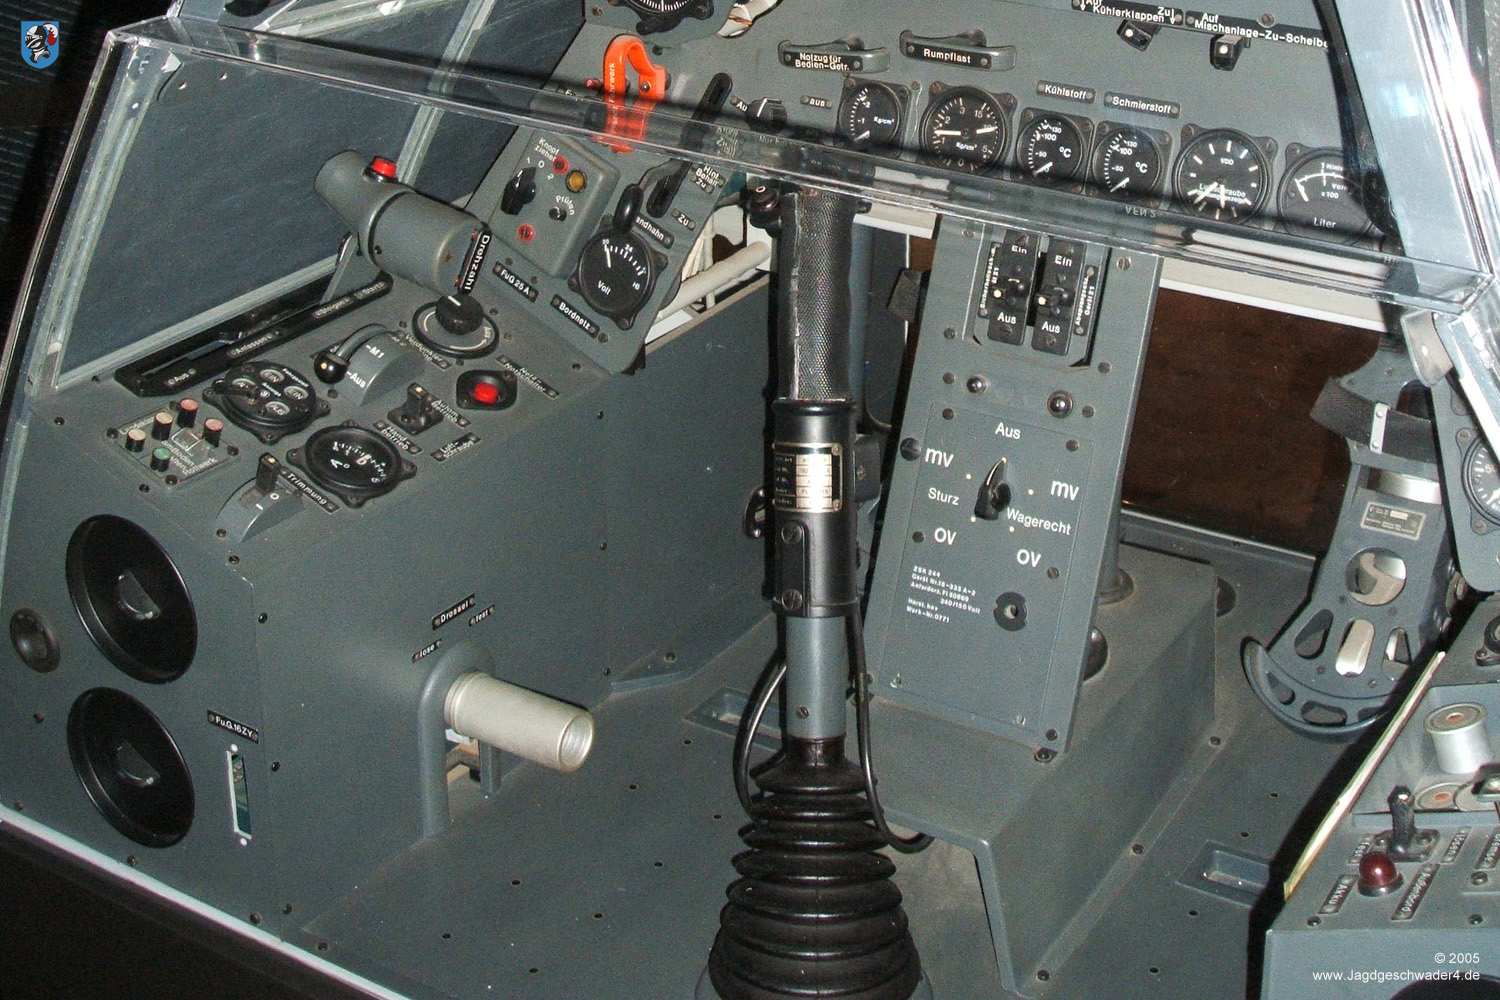 Focke Wulf Fw 190 Cockpit